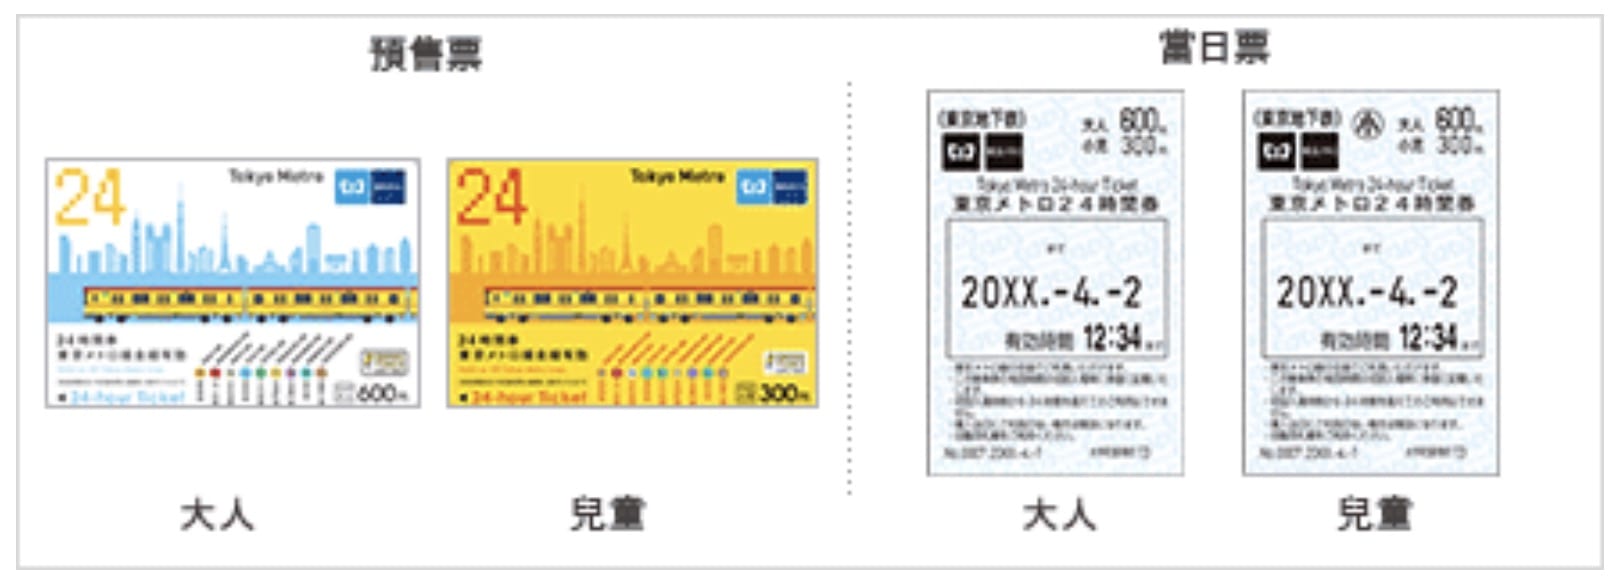 常見的東京metro交通票券整理